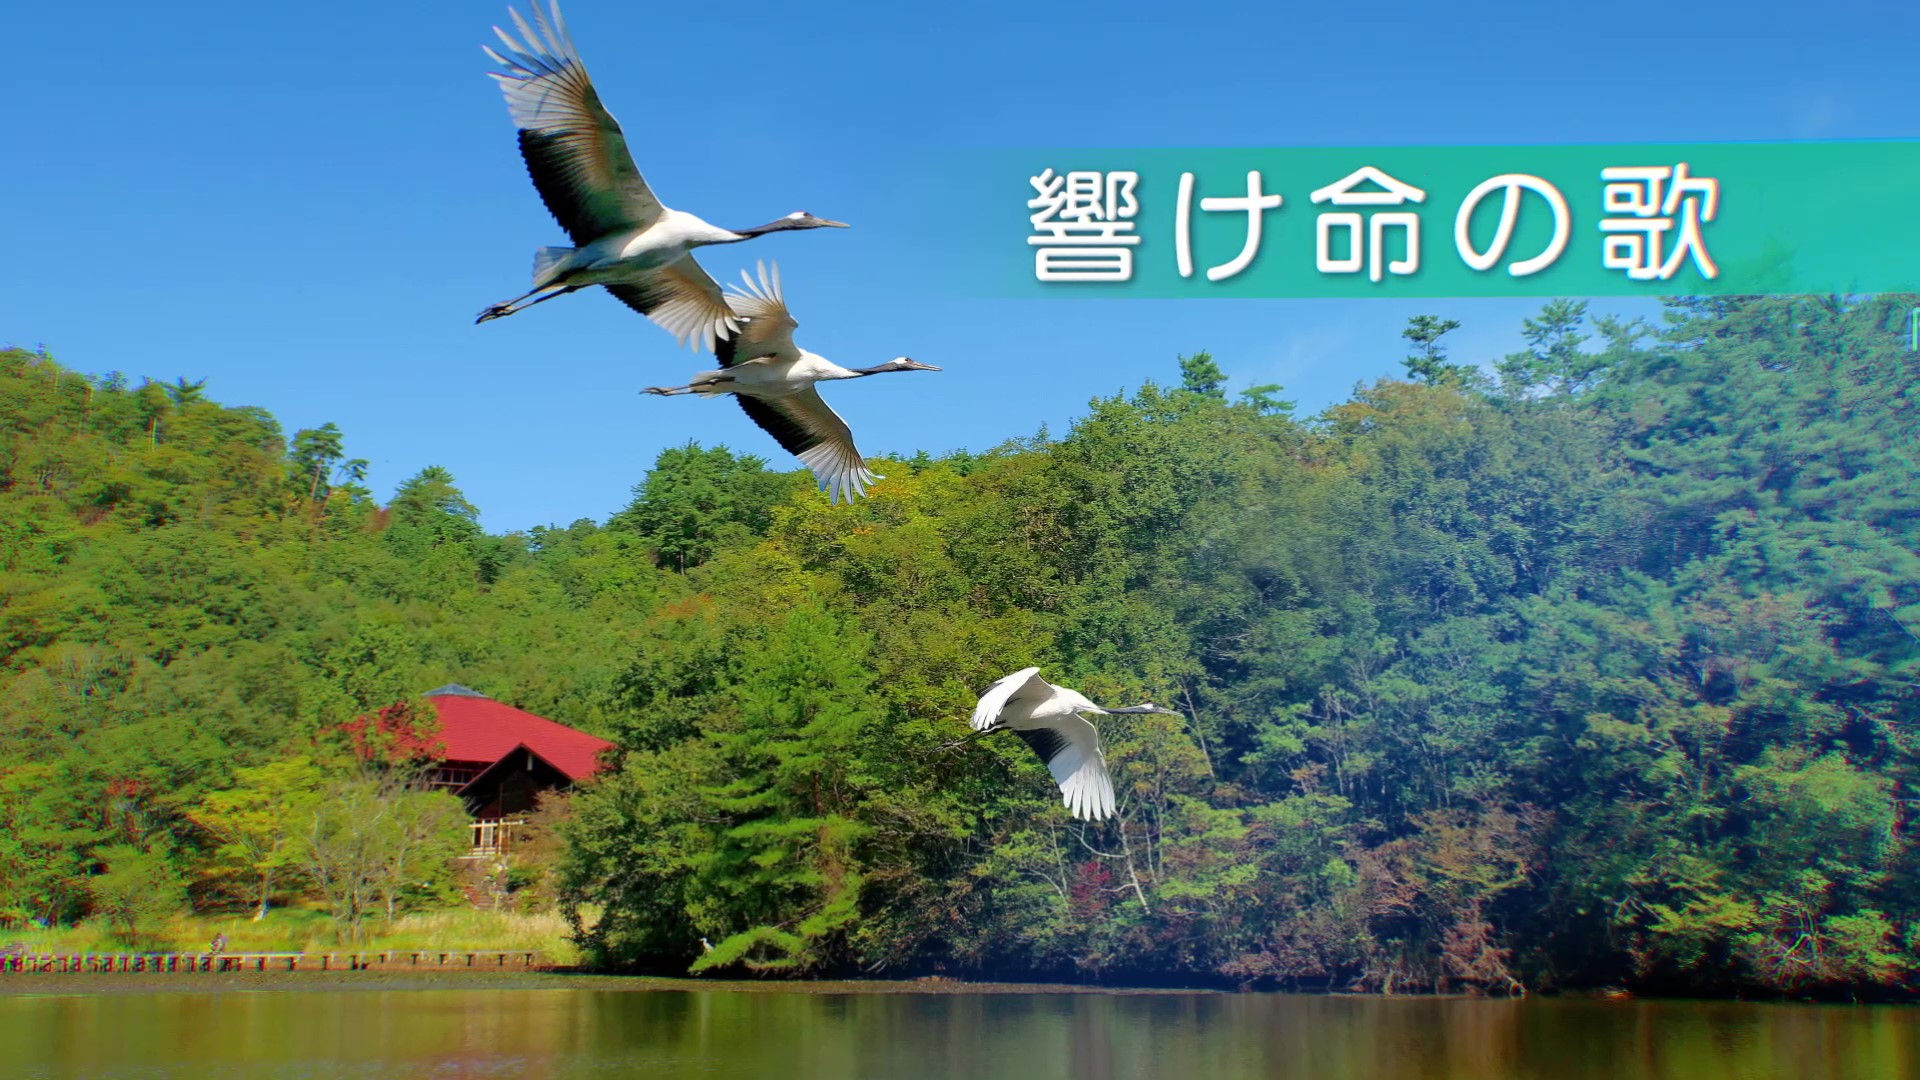 岡山県自然保護センター30th記念PR動画【公開】